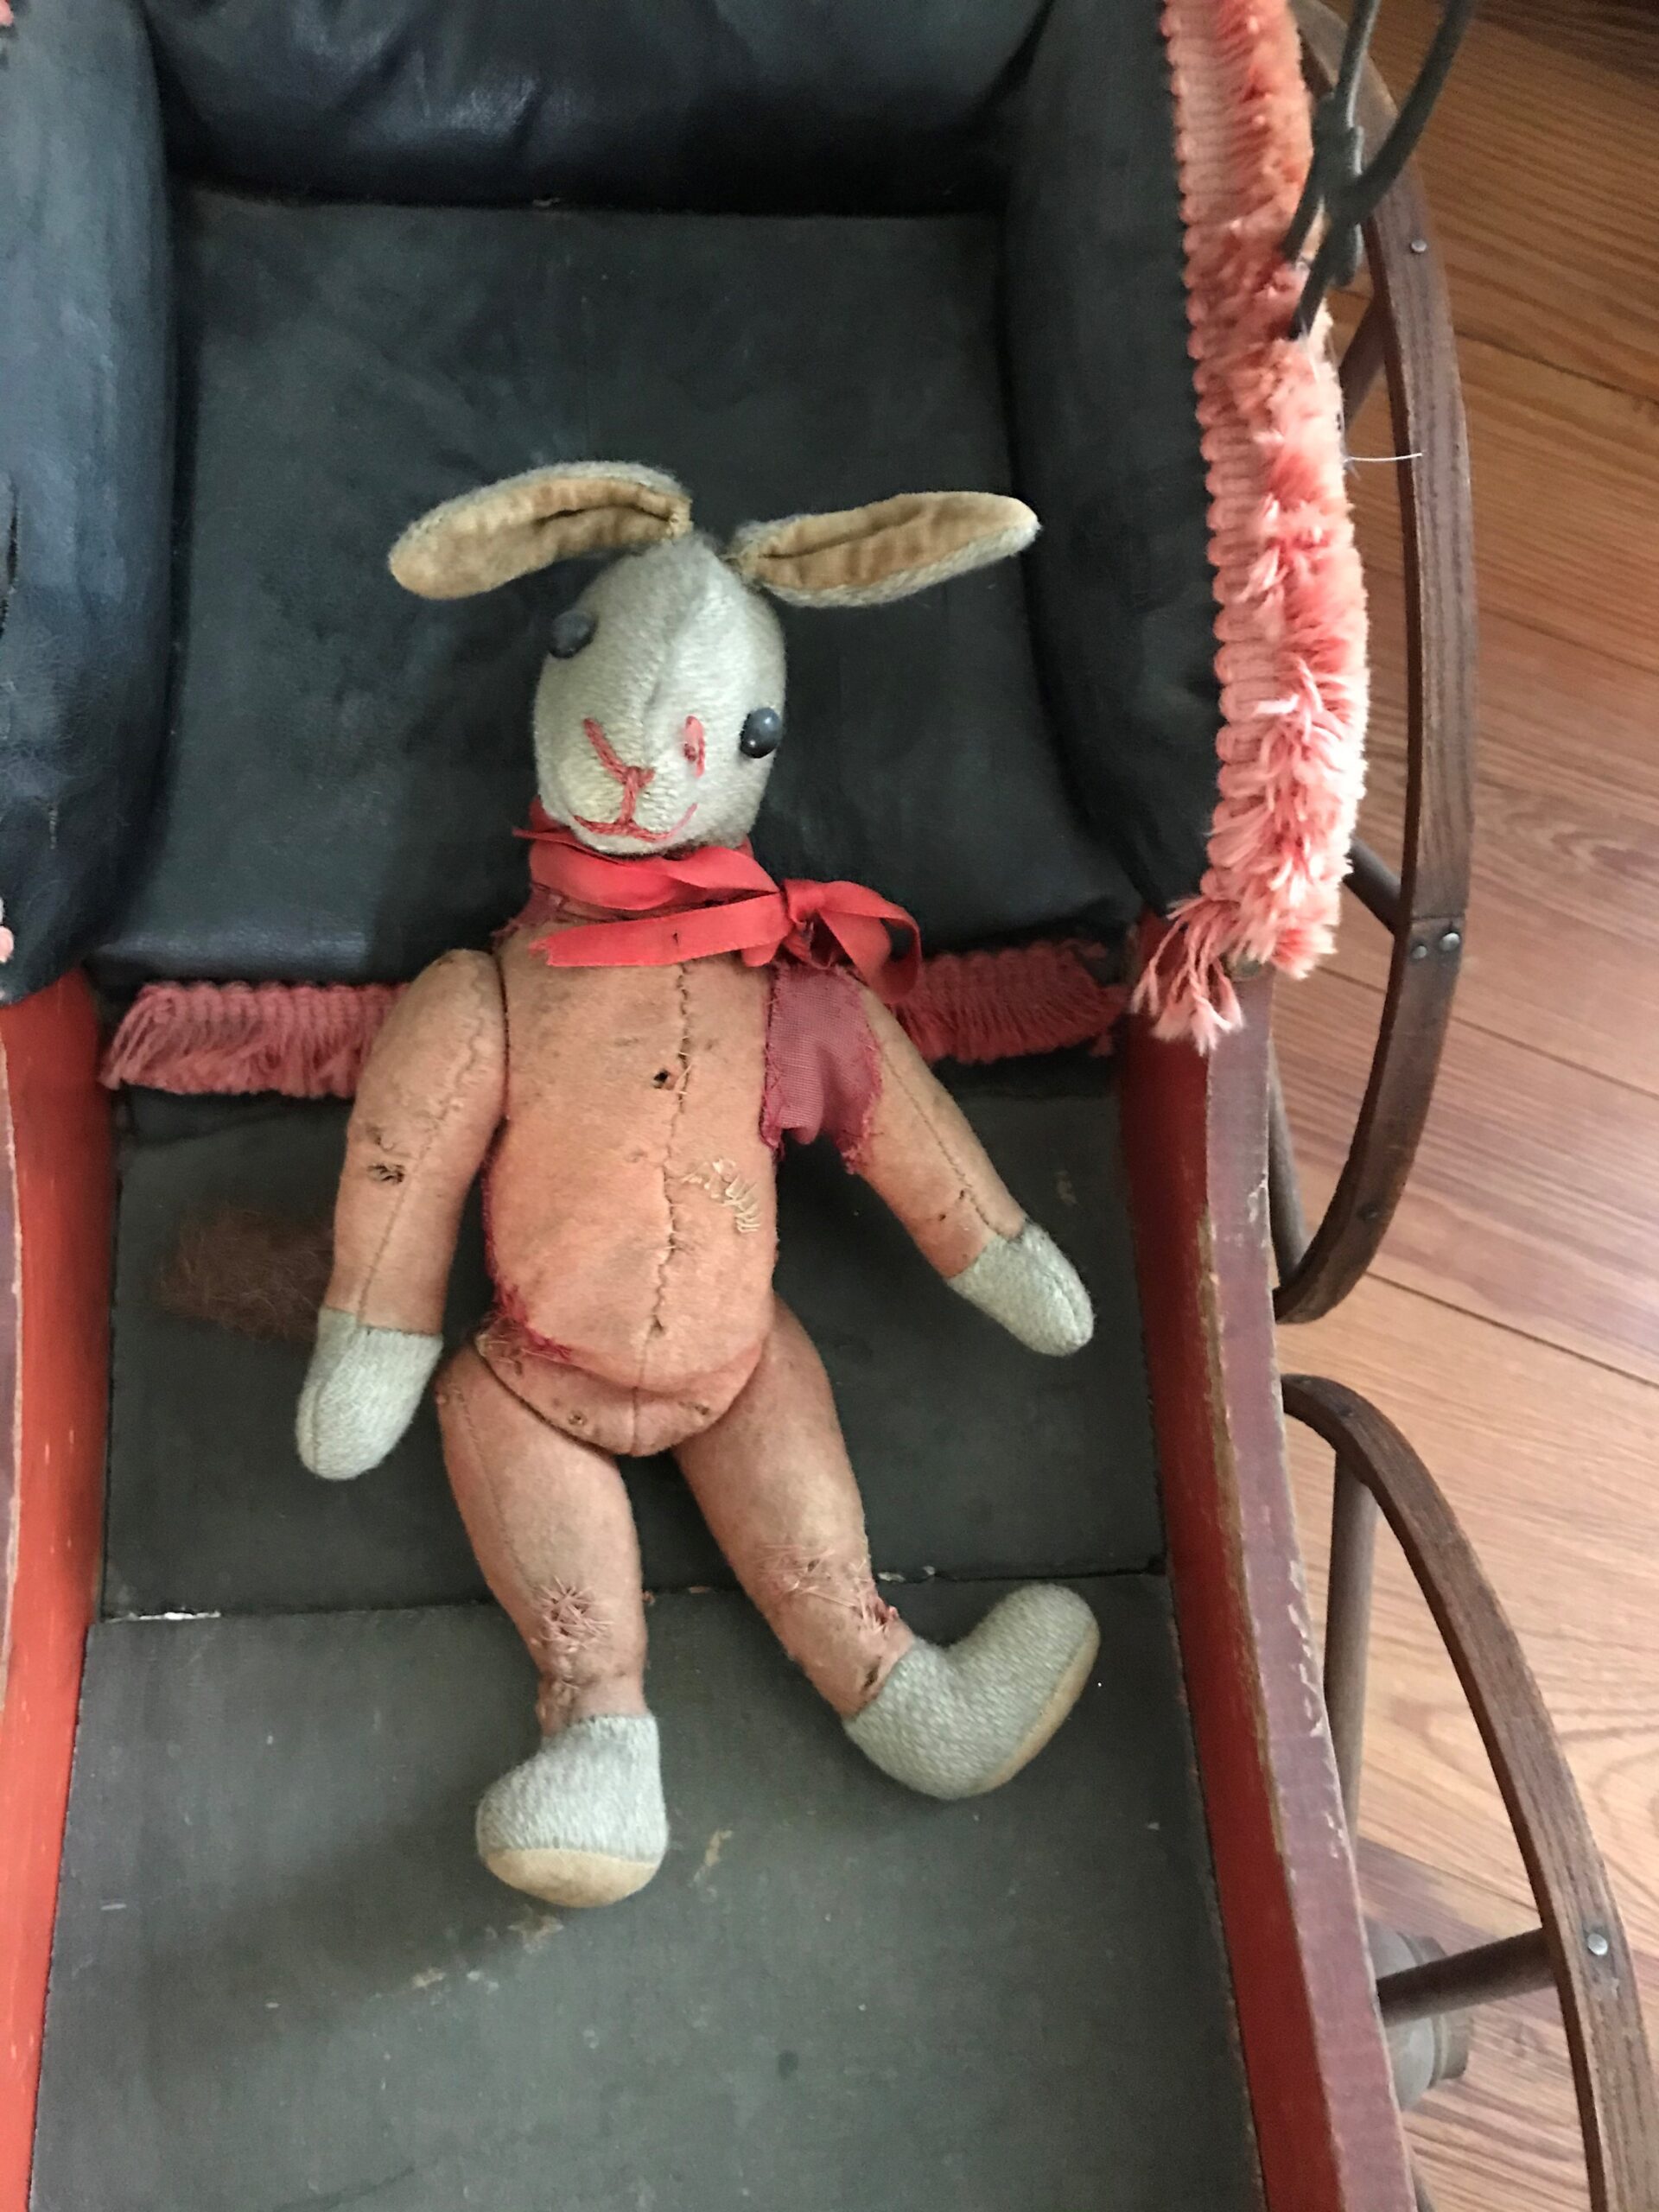 Un viejo conejo de peluche ligeramente andrajoso descansa dentro de un cochecito antiguo. El conejo tiene una cinta roja atada en un lazo alrededor del cuello.